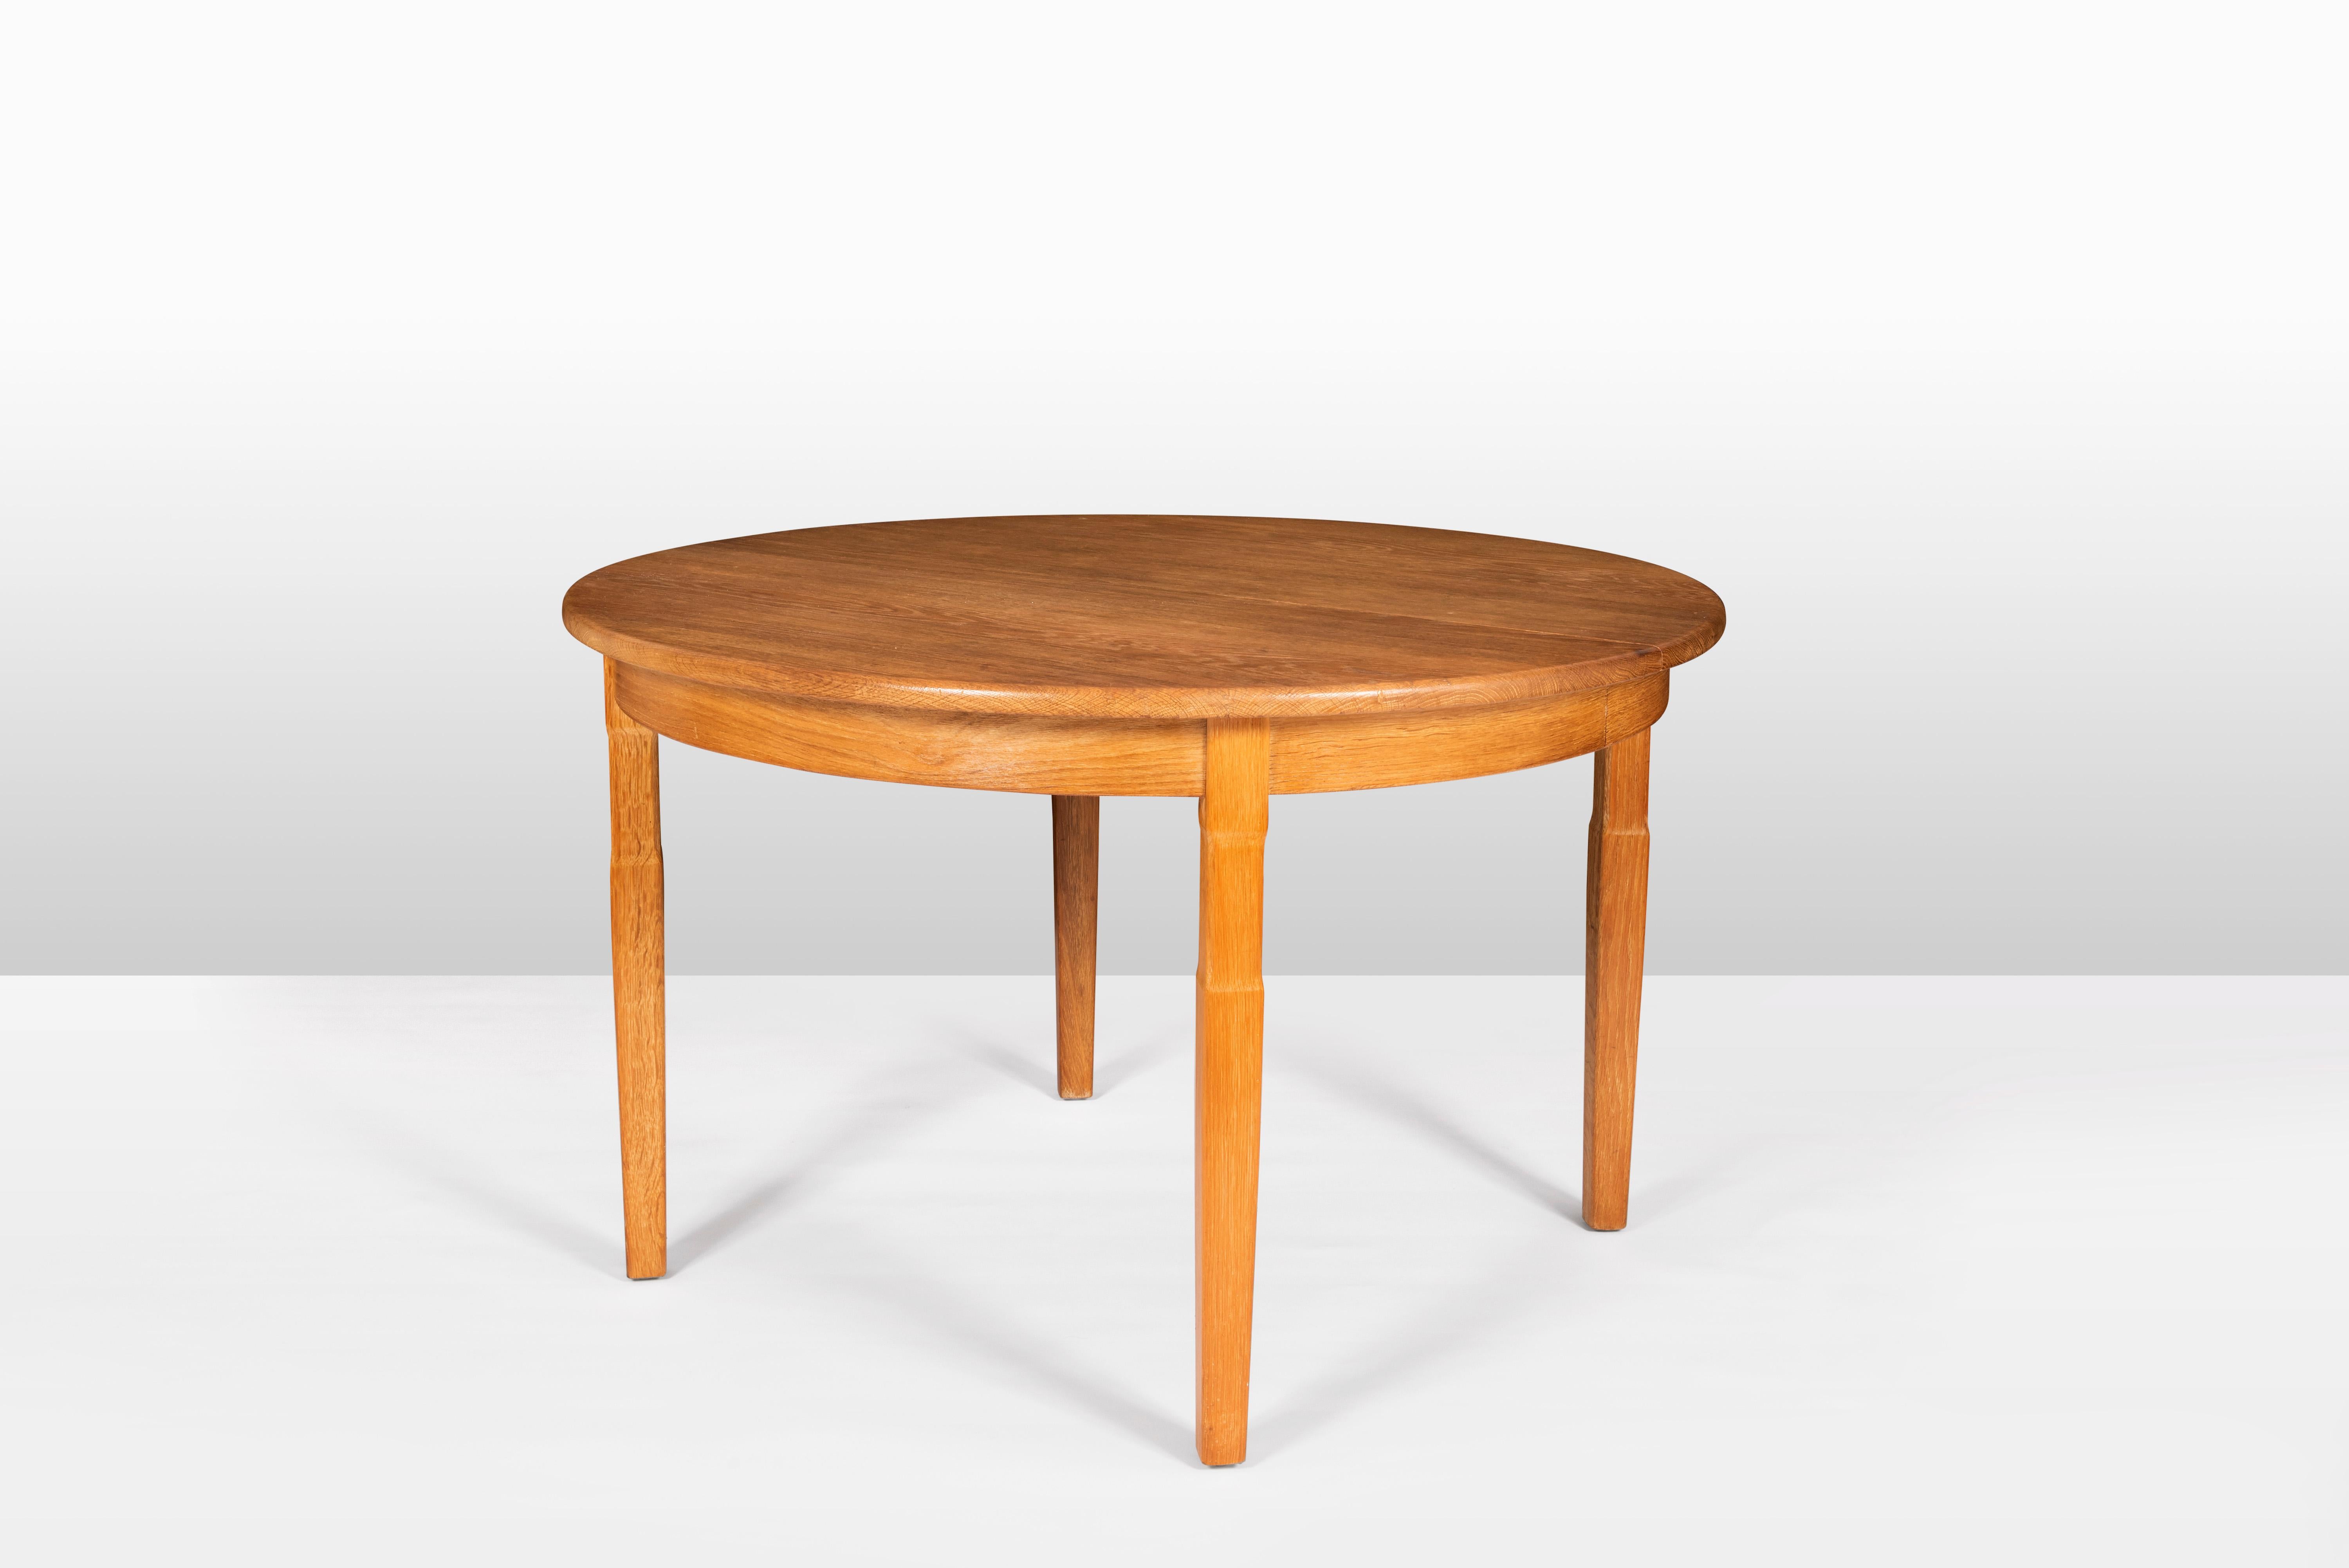 Table de salle à manger en chêne, extensible et rétractable, par Henning Kjaernulf. 
Nous avons également un ensemble de 6 chaises assorties qui iraient très bien avec la table.

Henning Kjaernulf (Danemark, 1911 - 1975) est surtout connu pour son